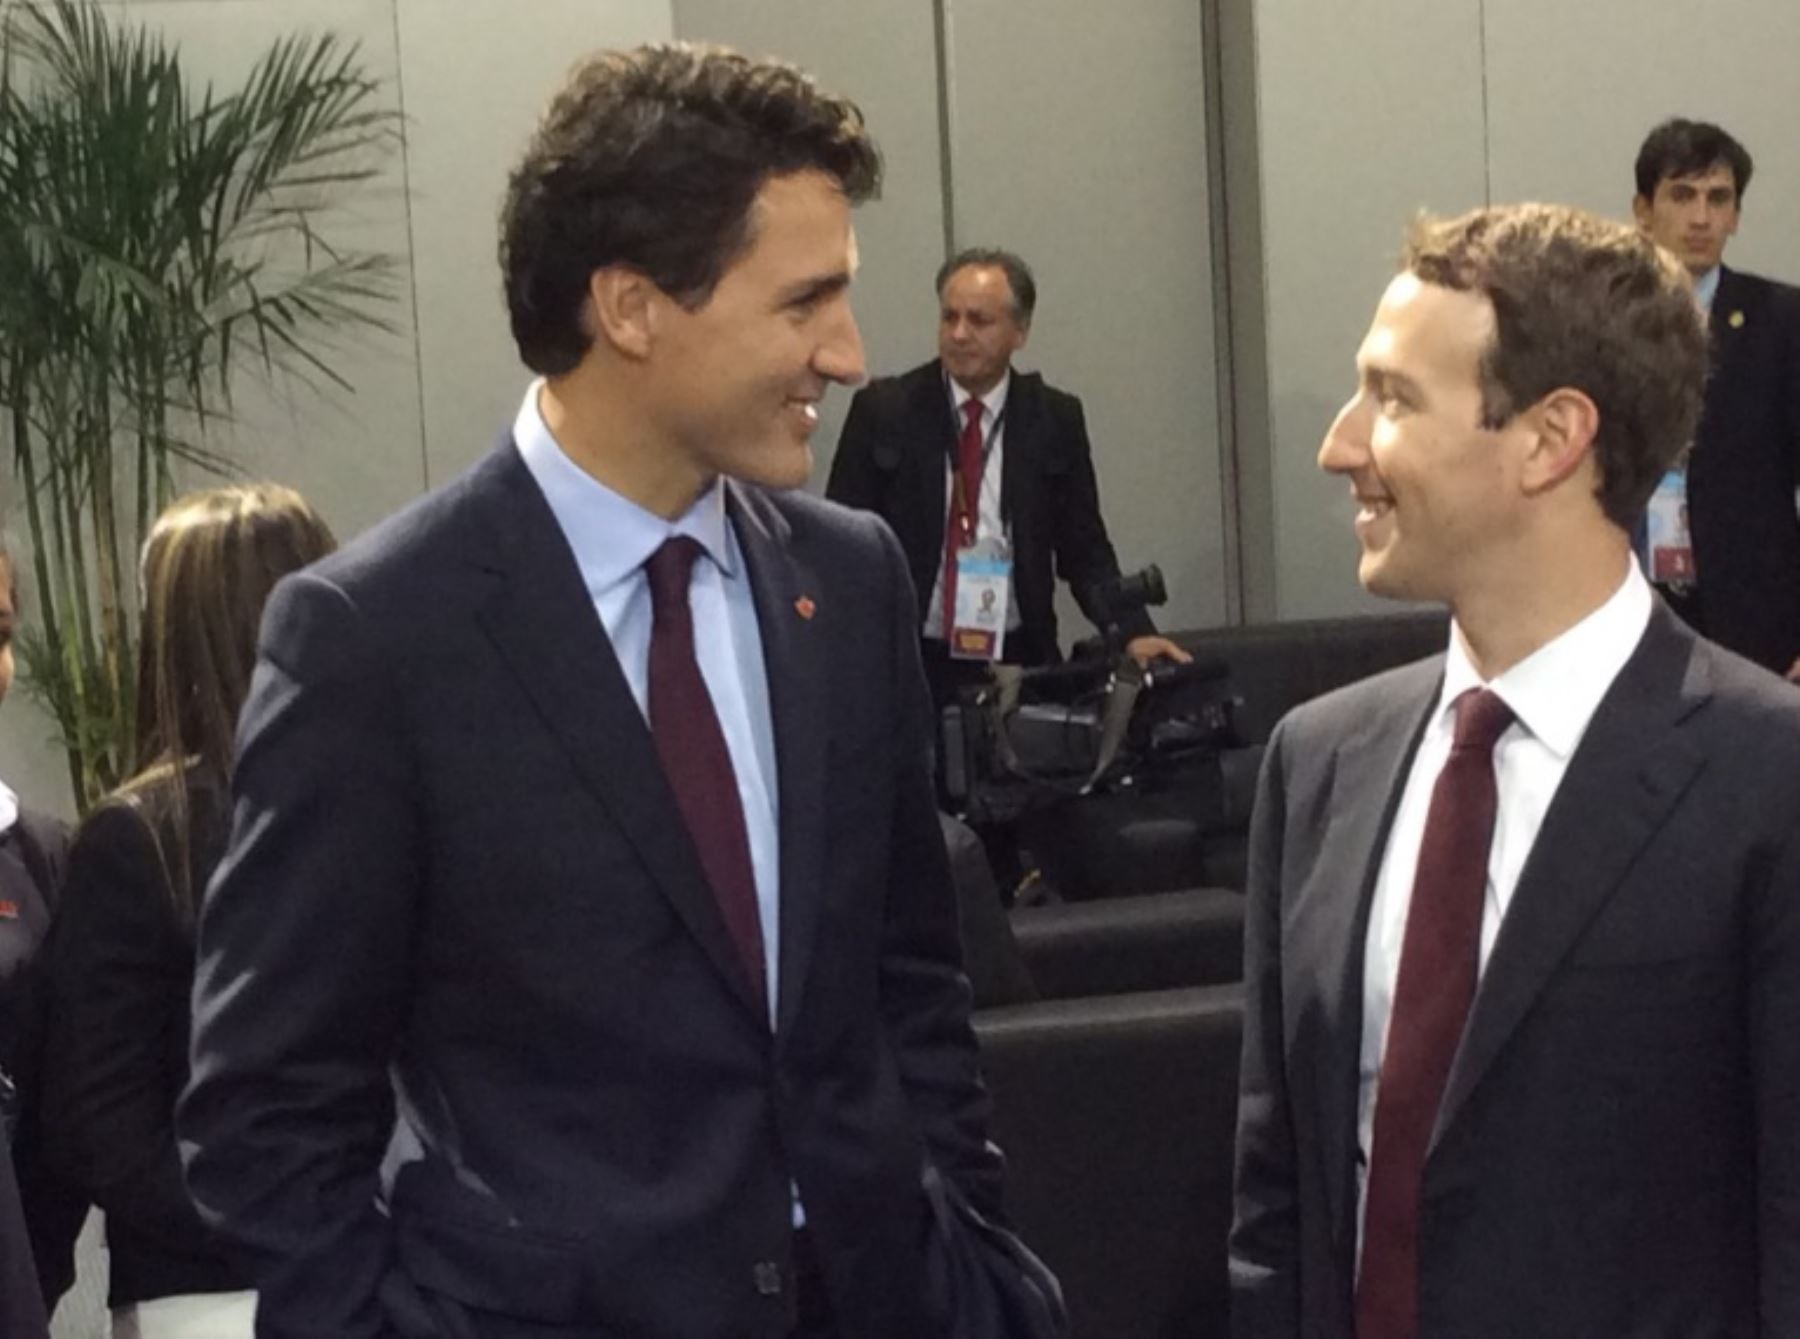 Mark Zuckerberg, creador de Facebook, conversa con el primer ministro de Canadá, Justin Trudeau, en el marco de las reuniones de APEC 2016.